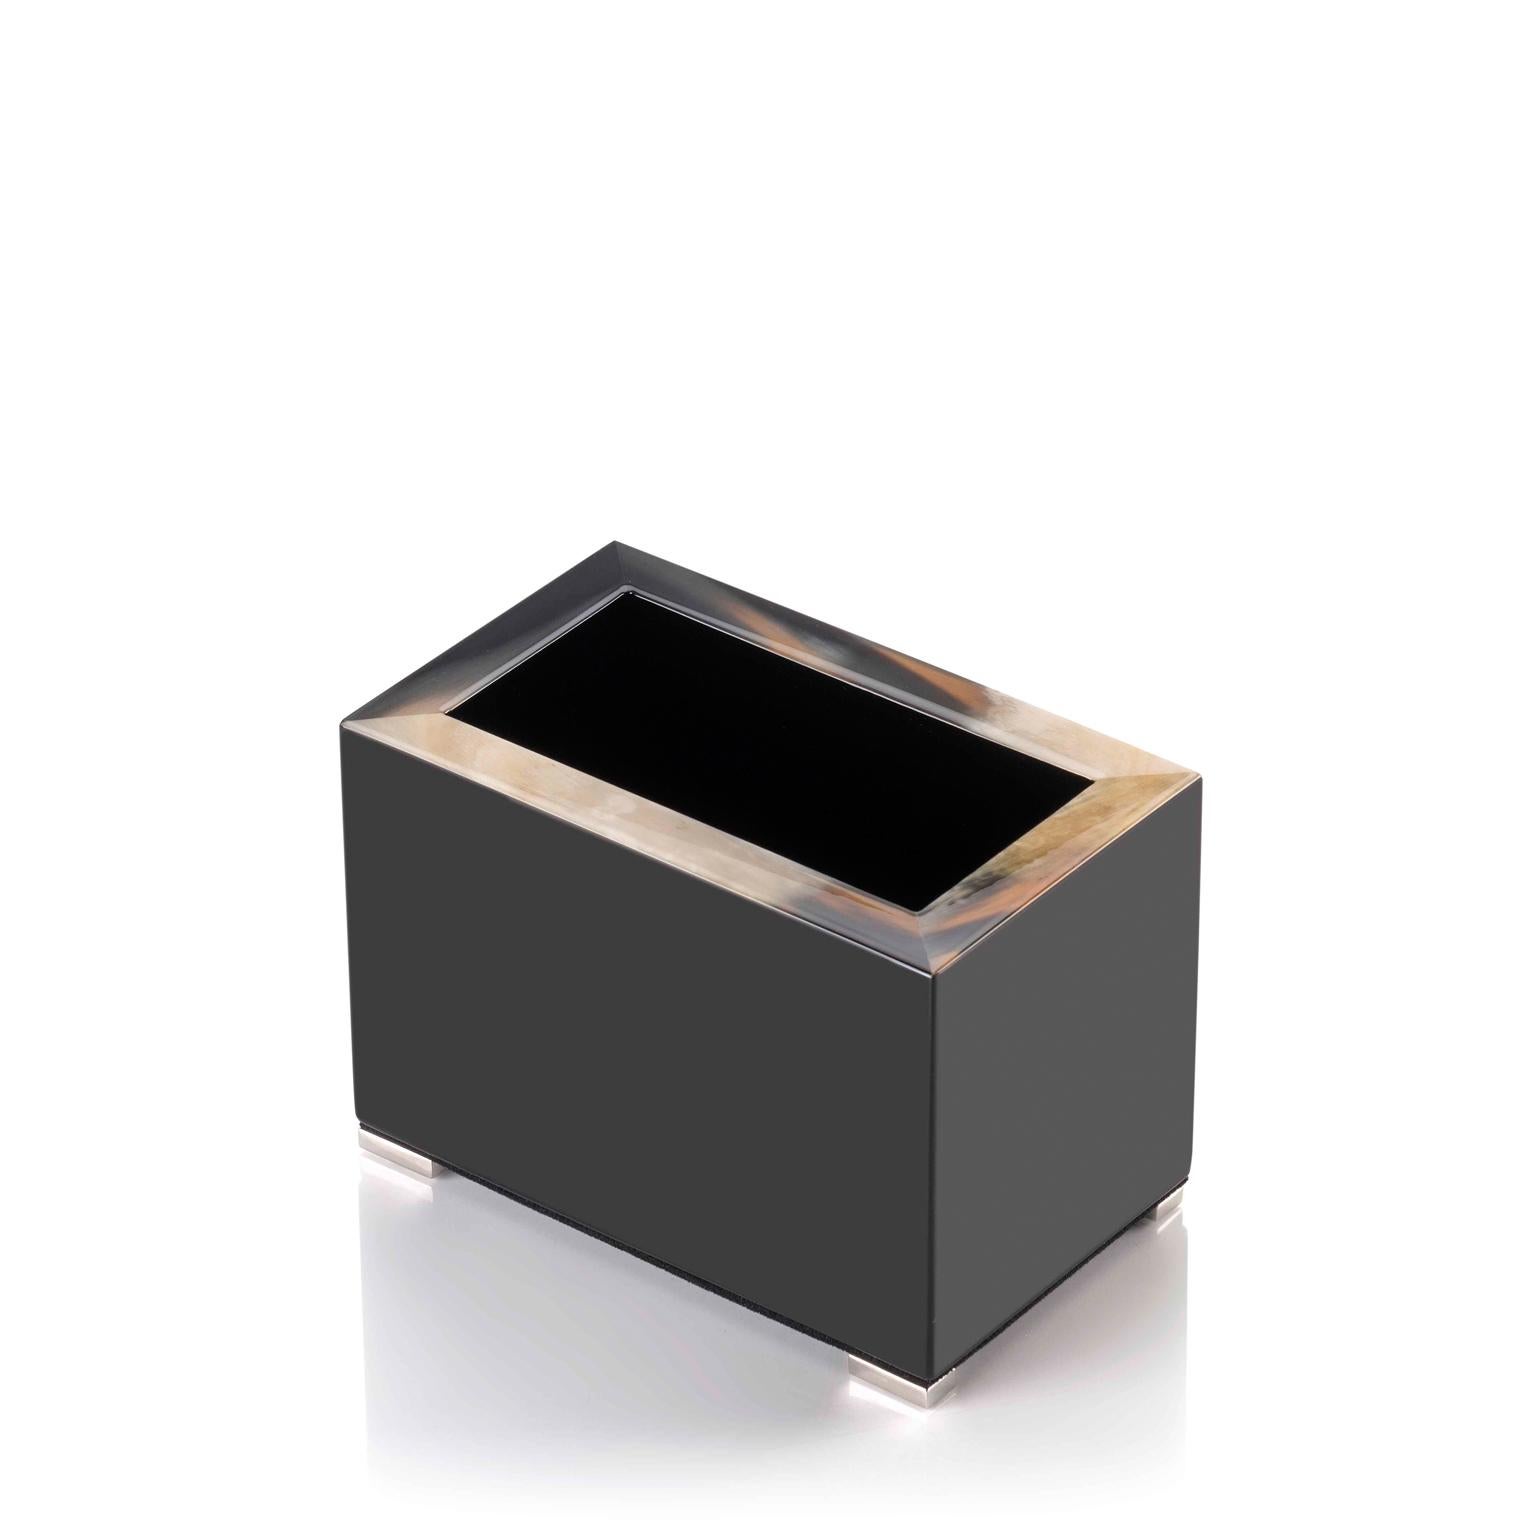 Unser Stifthalter Calipso ist eine elegante Ergänzung für den Schreibtisch. Er hat eine rechteckige Silhouette aus glänzend schwarz lackiertem Holz, die mit einem markanten Rand aus Corno Italiano akzentuiert ist, dessen einzigartige Maserung für